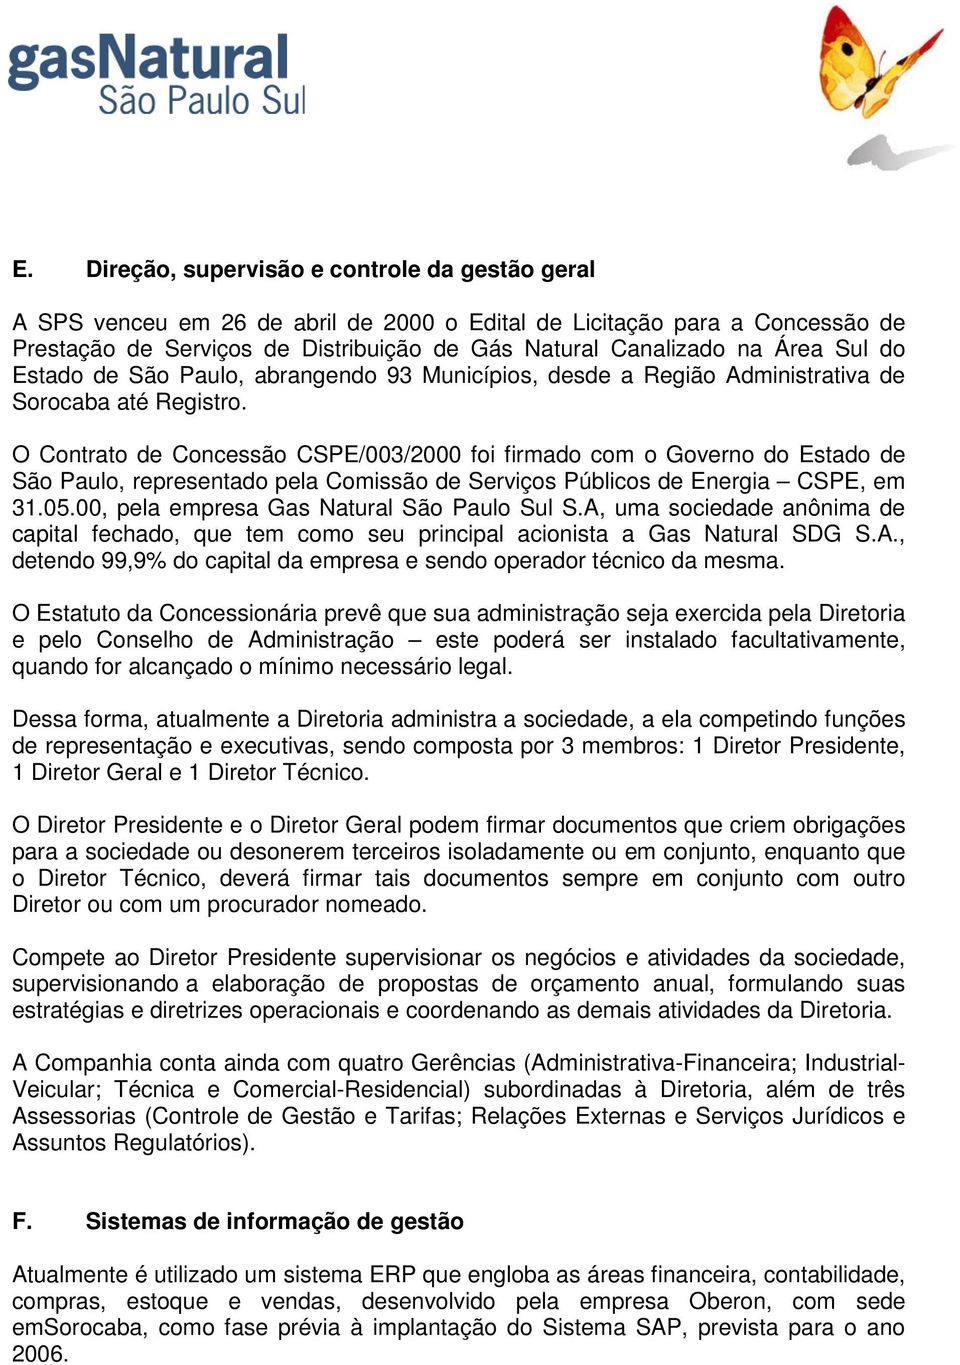 O Contrato de Concessão CSPE/003/2000 foi firmado com o Governo do Estado de São Paulo, representado pela Comissão de Serviços Públicos de Energia CSPE, em 31.05.